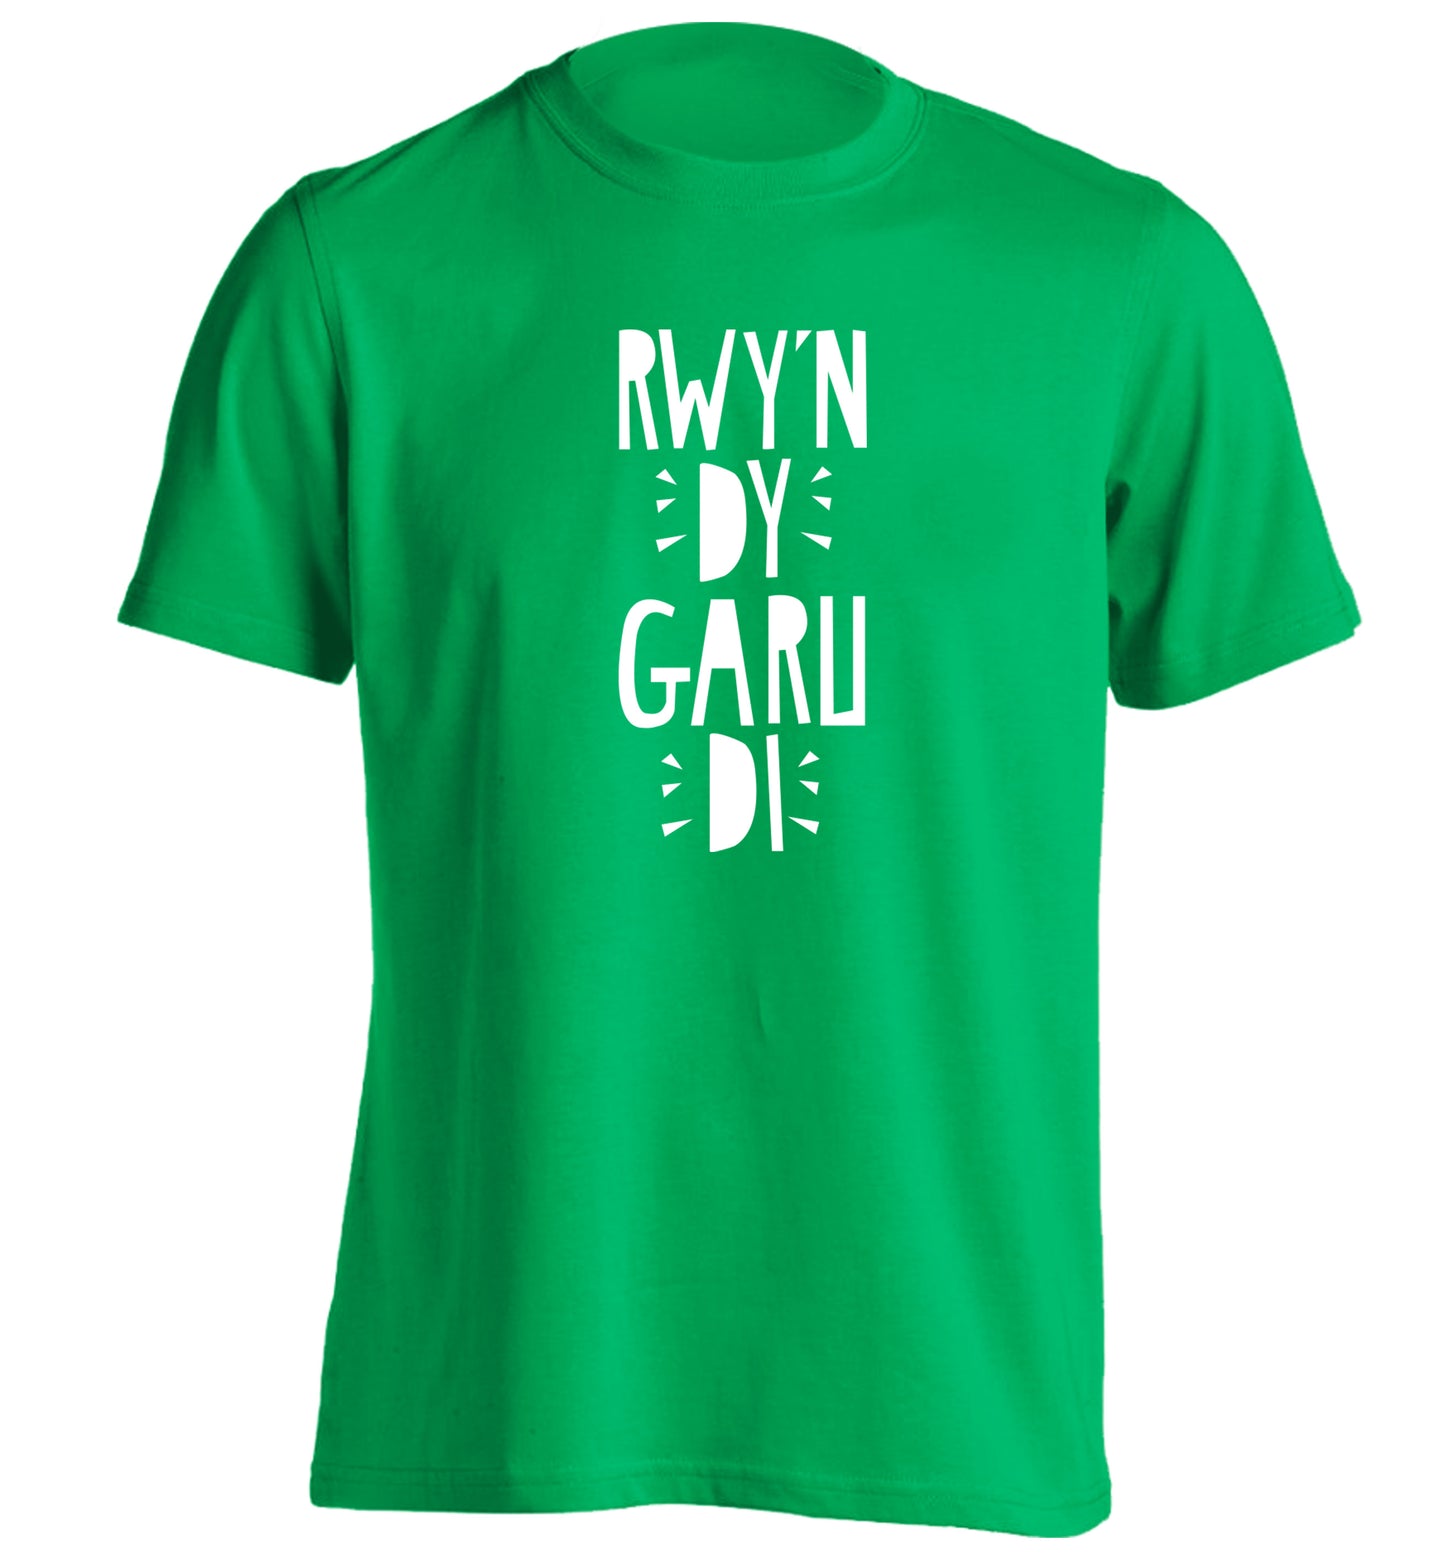 Rwy'n dy garu di - I love you adults unisex green Tshirt 2XL